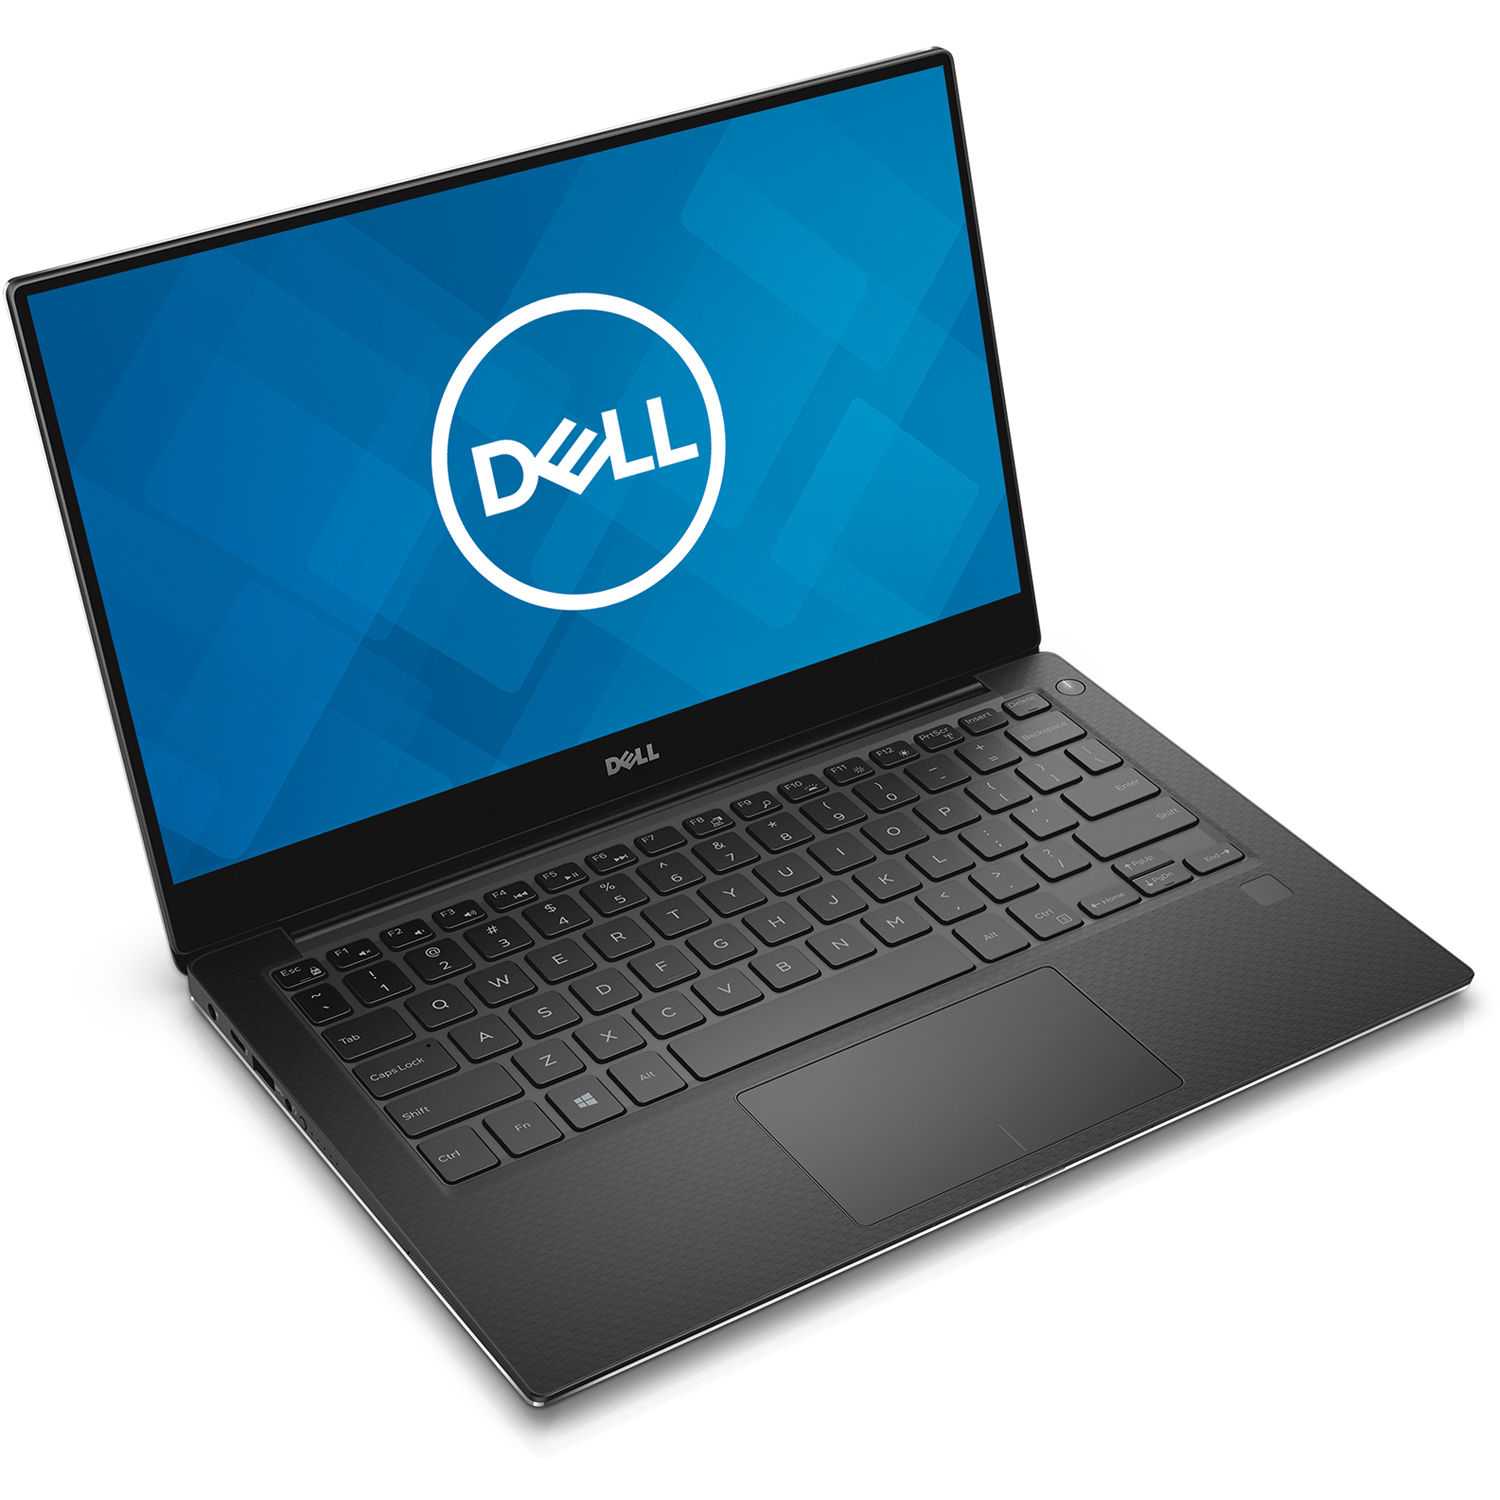 Ноутбук Dell Inspiron 5521 (210-40101blk) - подробные характеристики обзоры видео фото Цены в интернет-магазинах где можно купить ноутбук Dell Inspiron 5521 (210-40101blk)